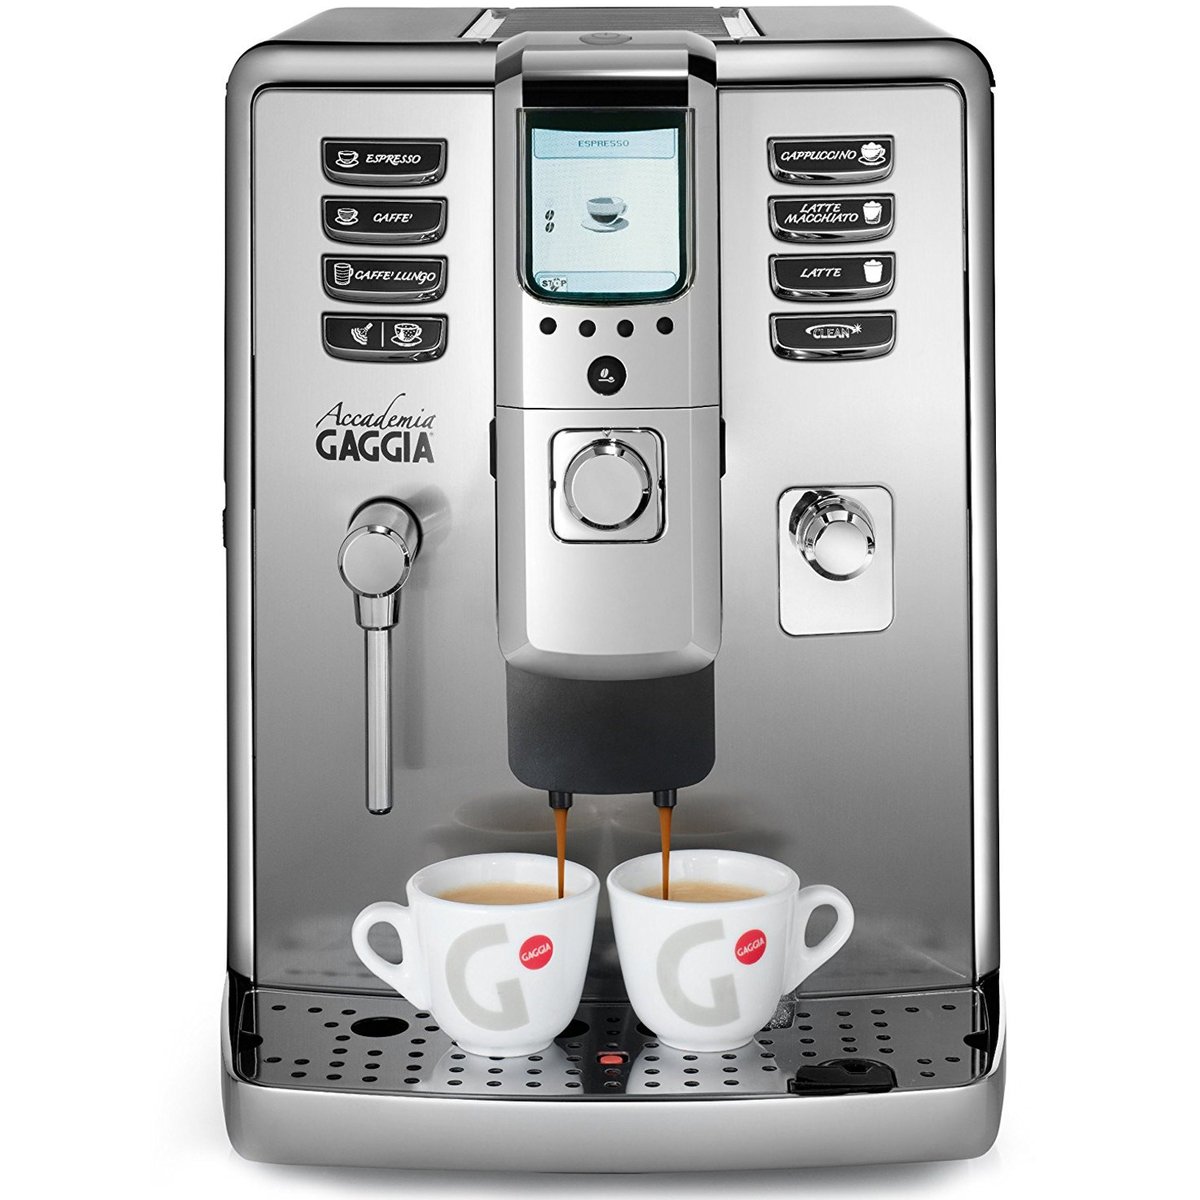 Gaggia Automatic Coffee Maker Accademia